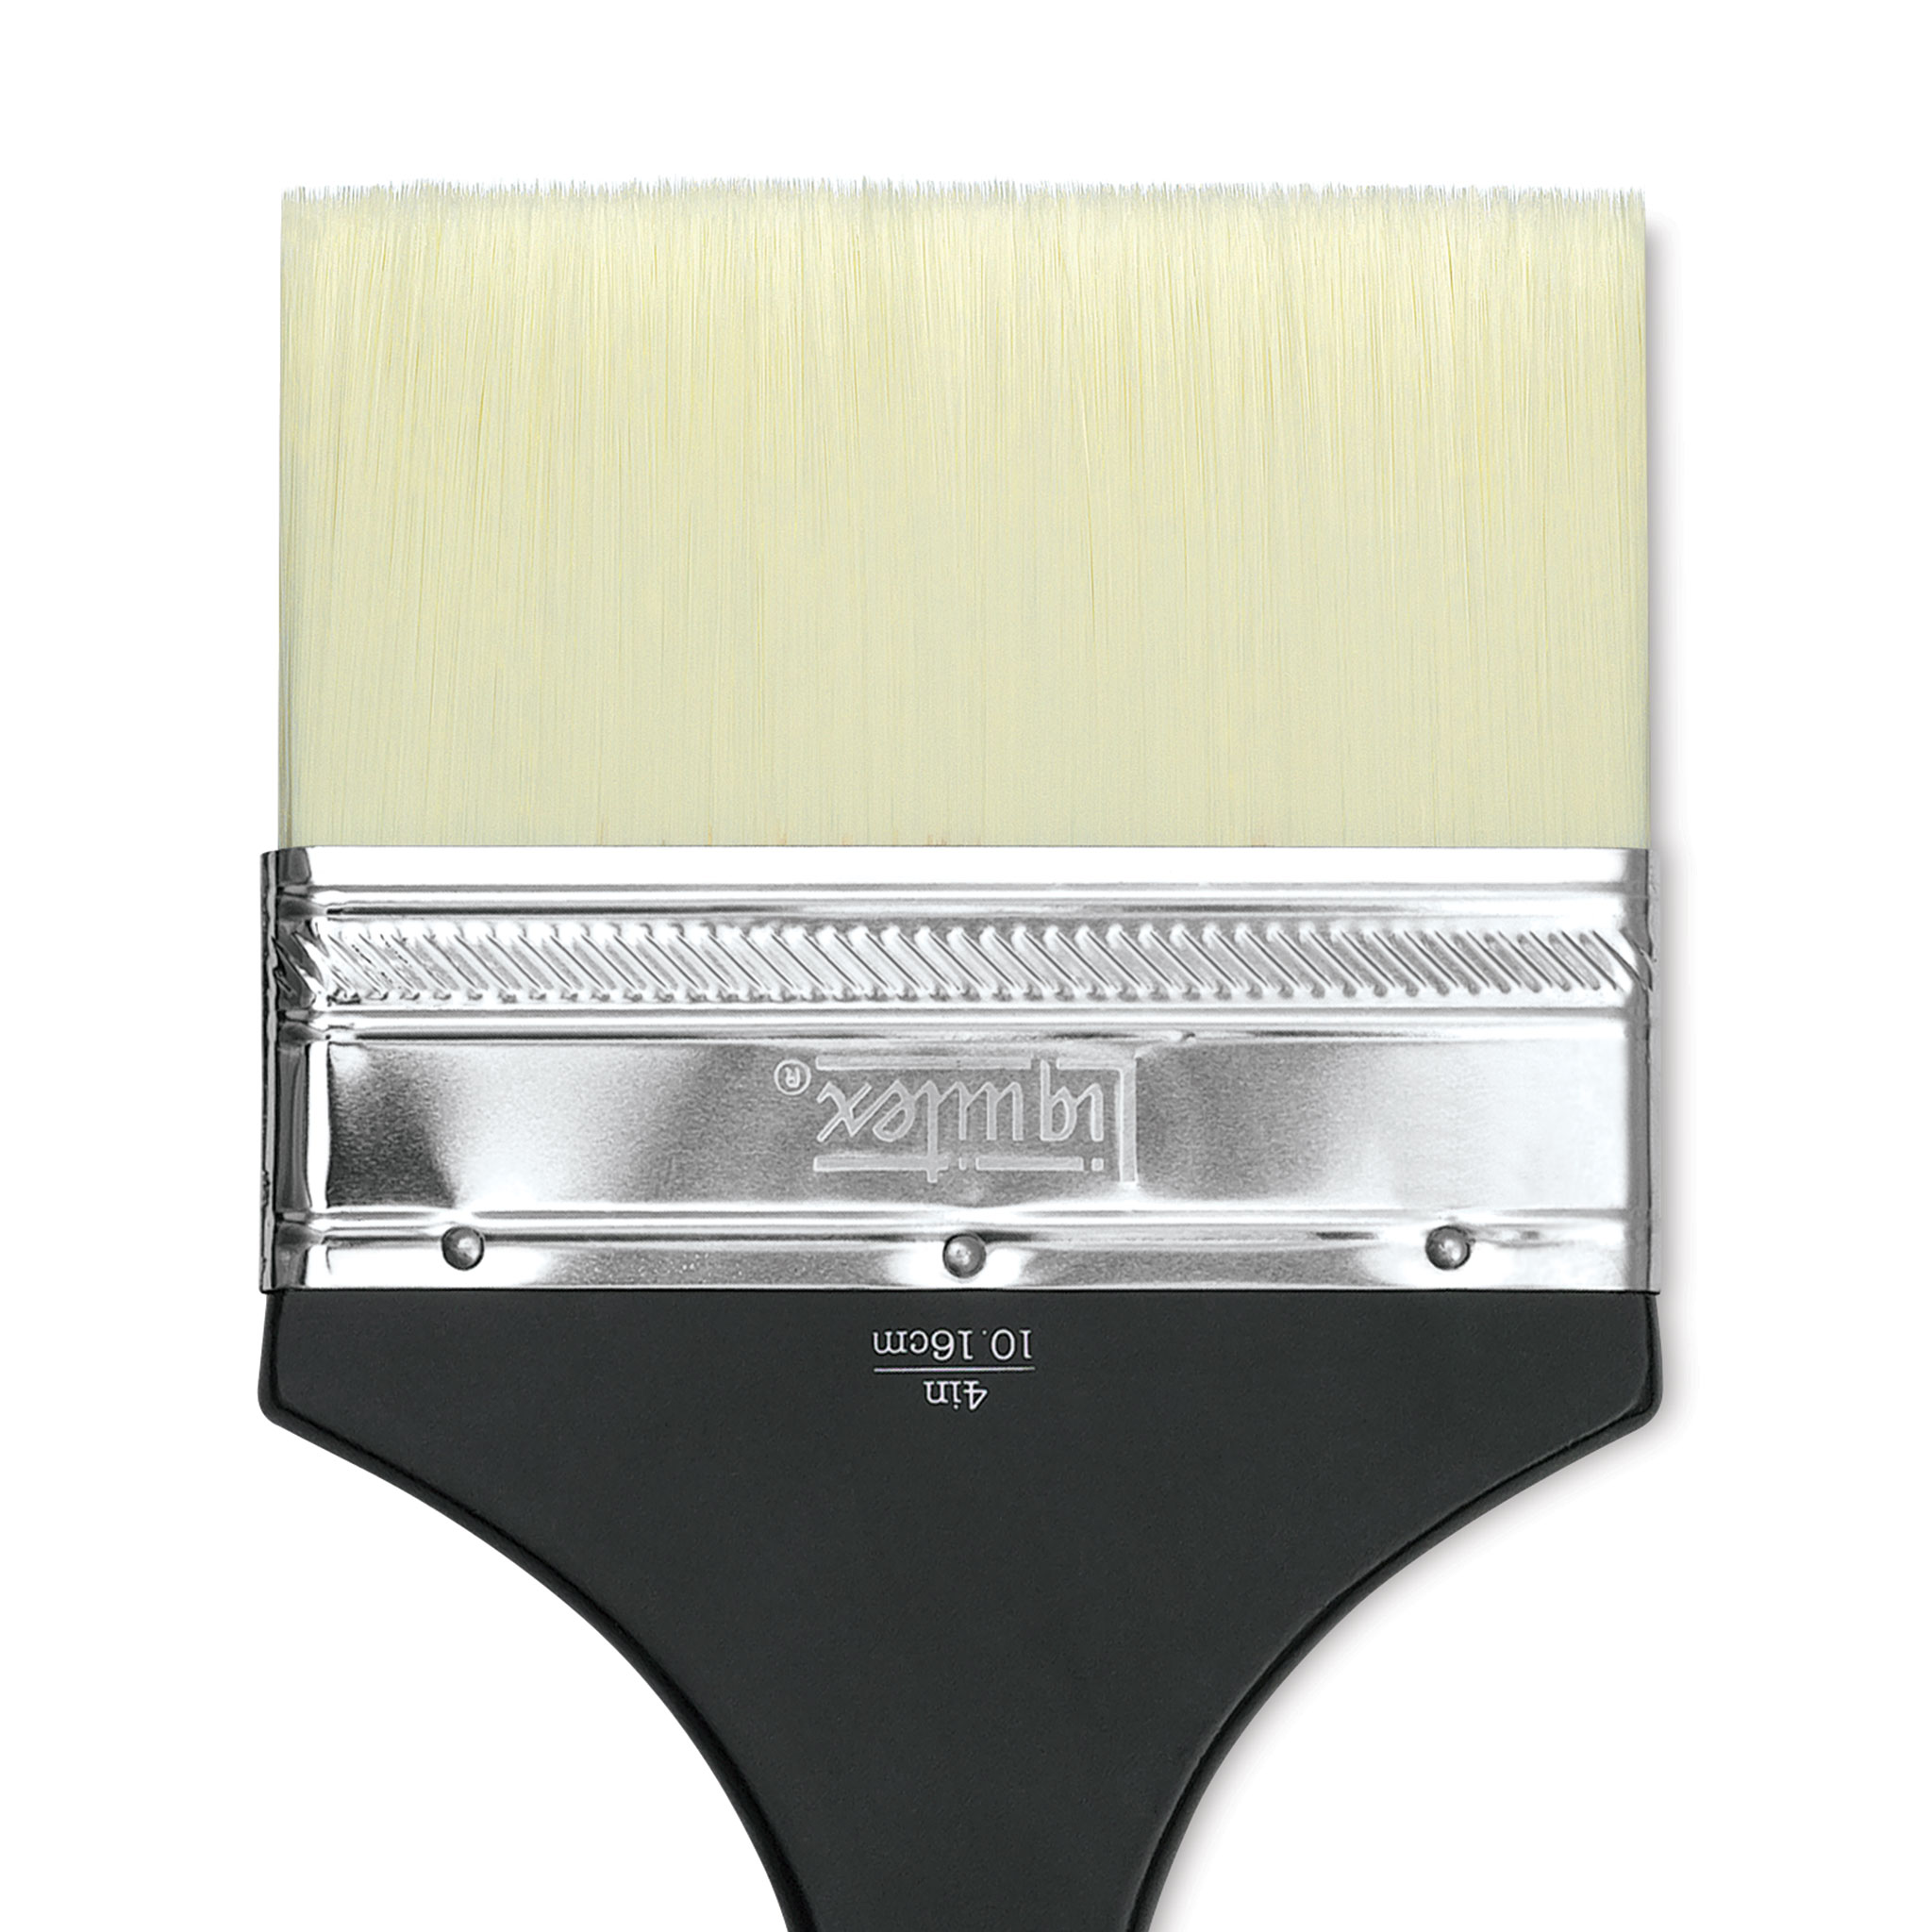 Liquitex® Professional Freestyle Large Scale Paddle Brush